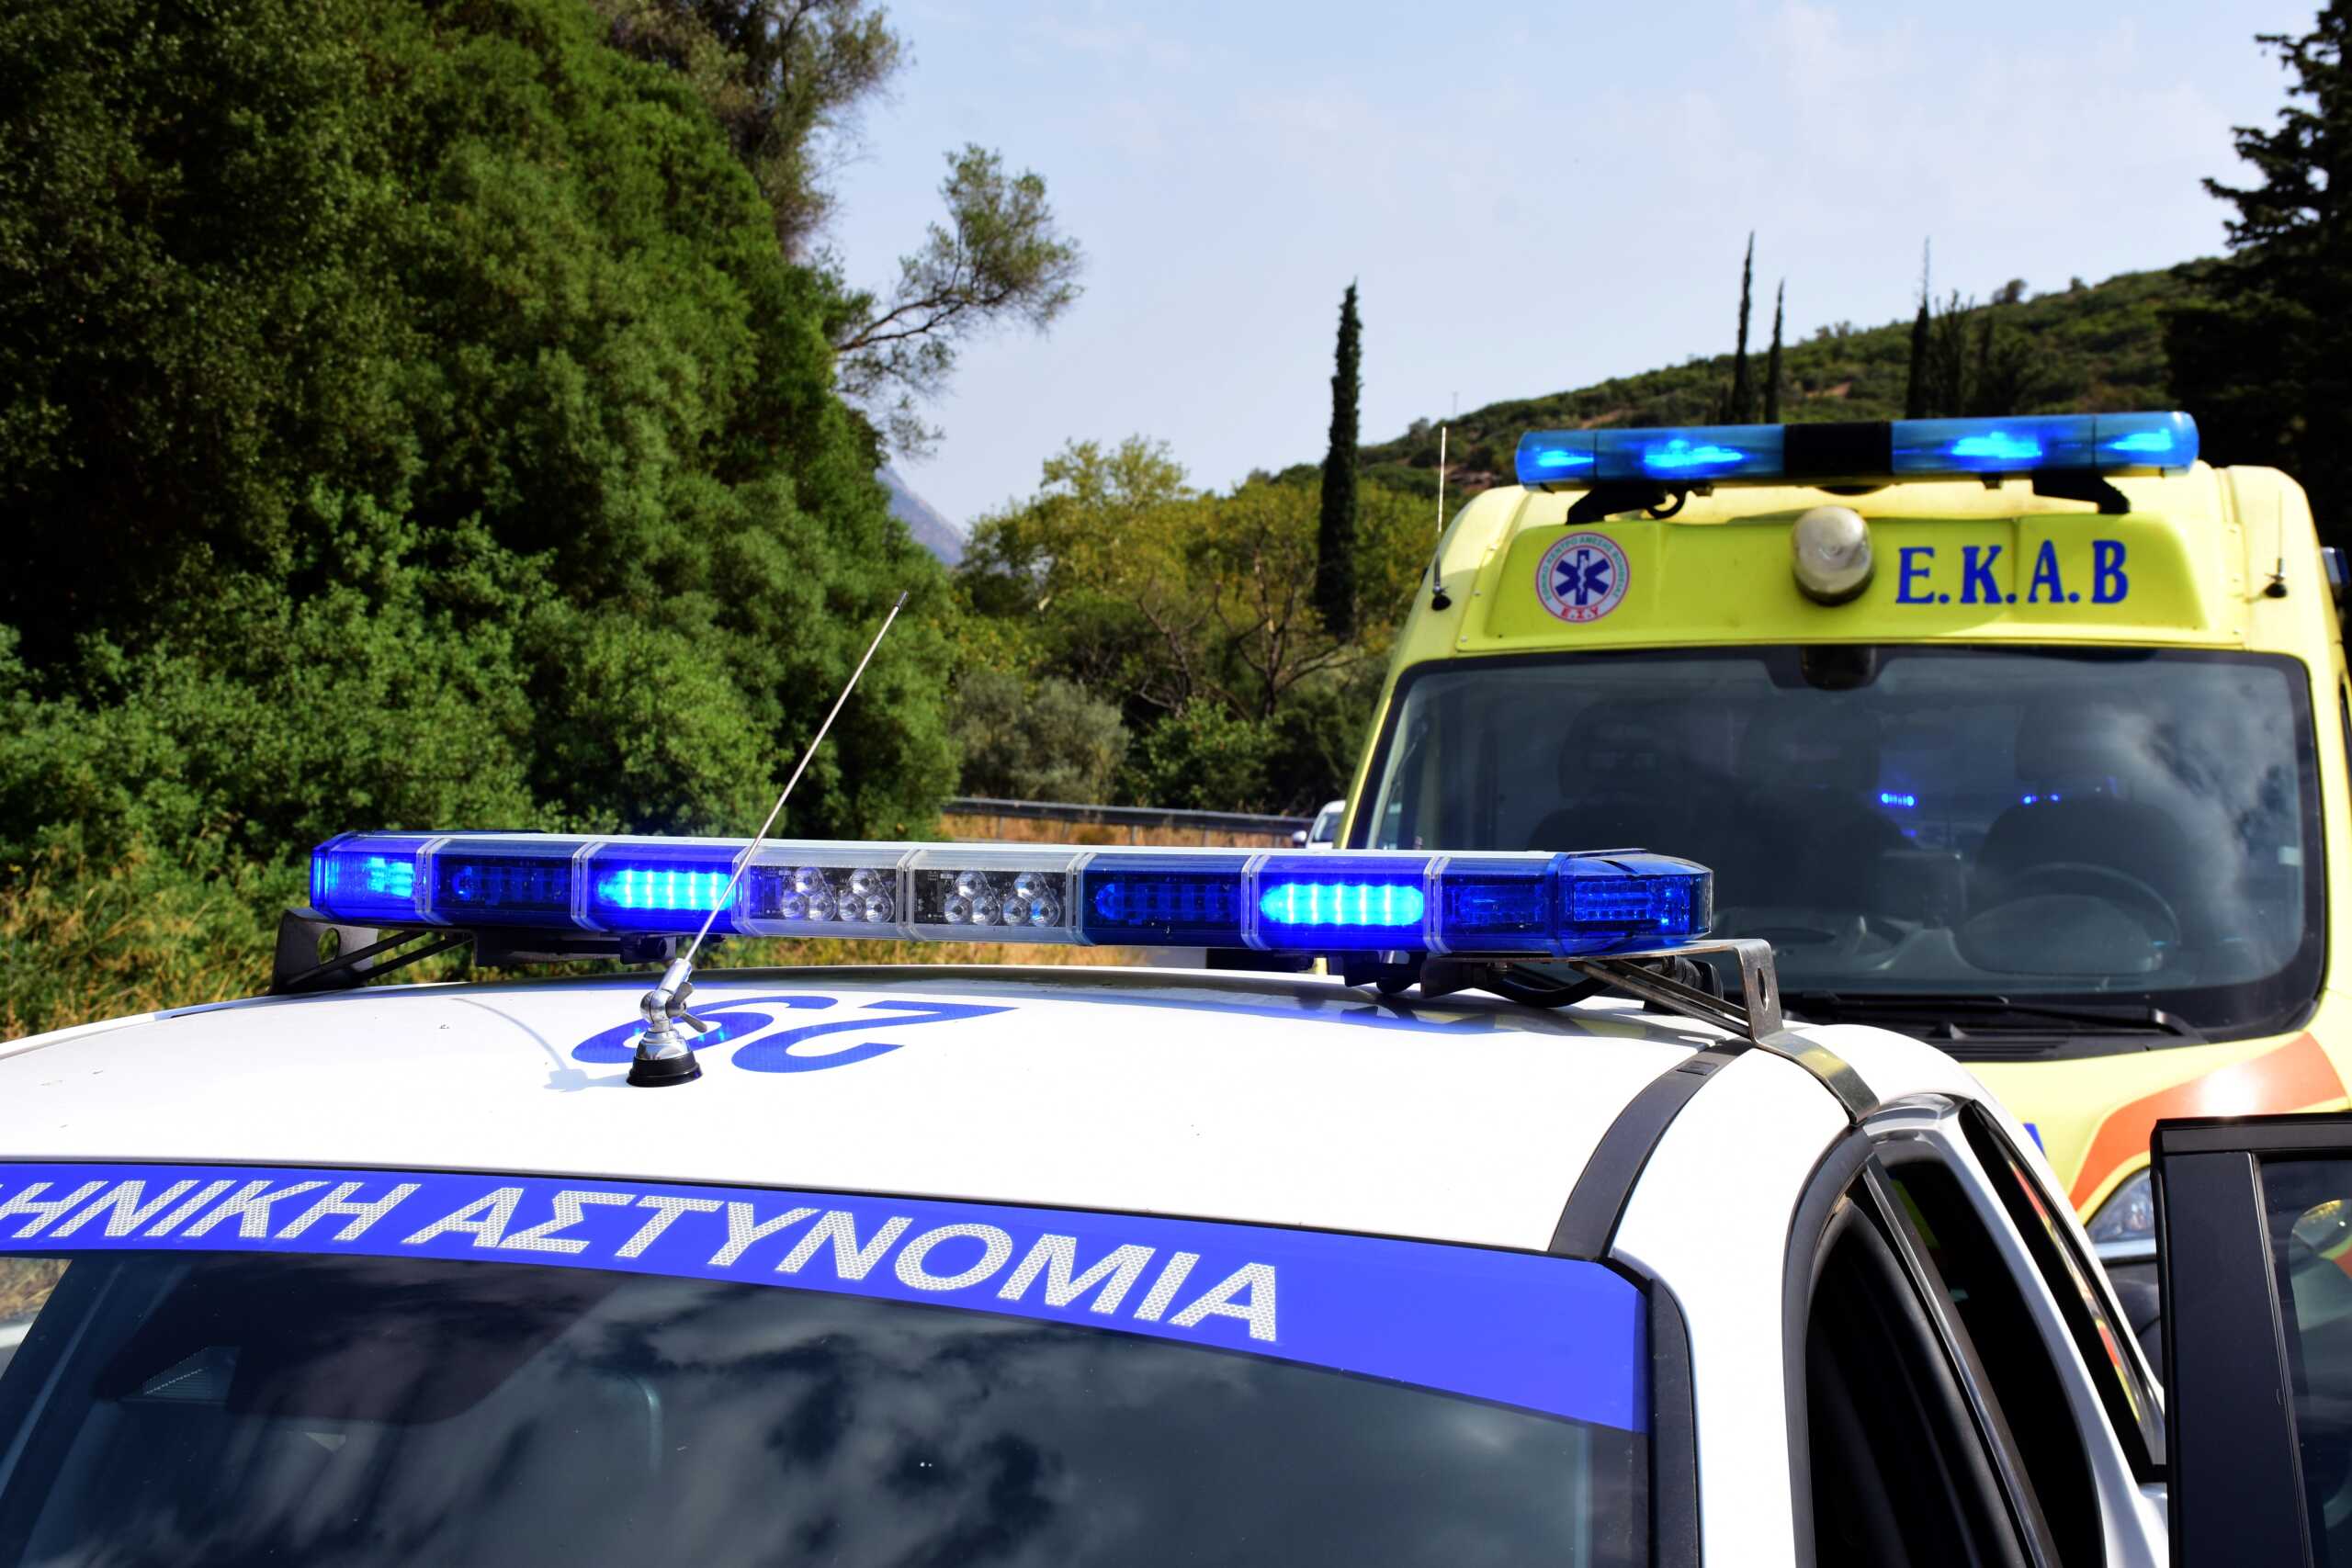 Θεσσαλονίκη: Τροχαίο με μηχανή να παρασύρει πεζούς, 4 οι τραυματίες